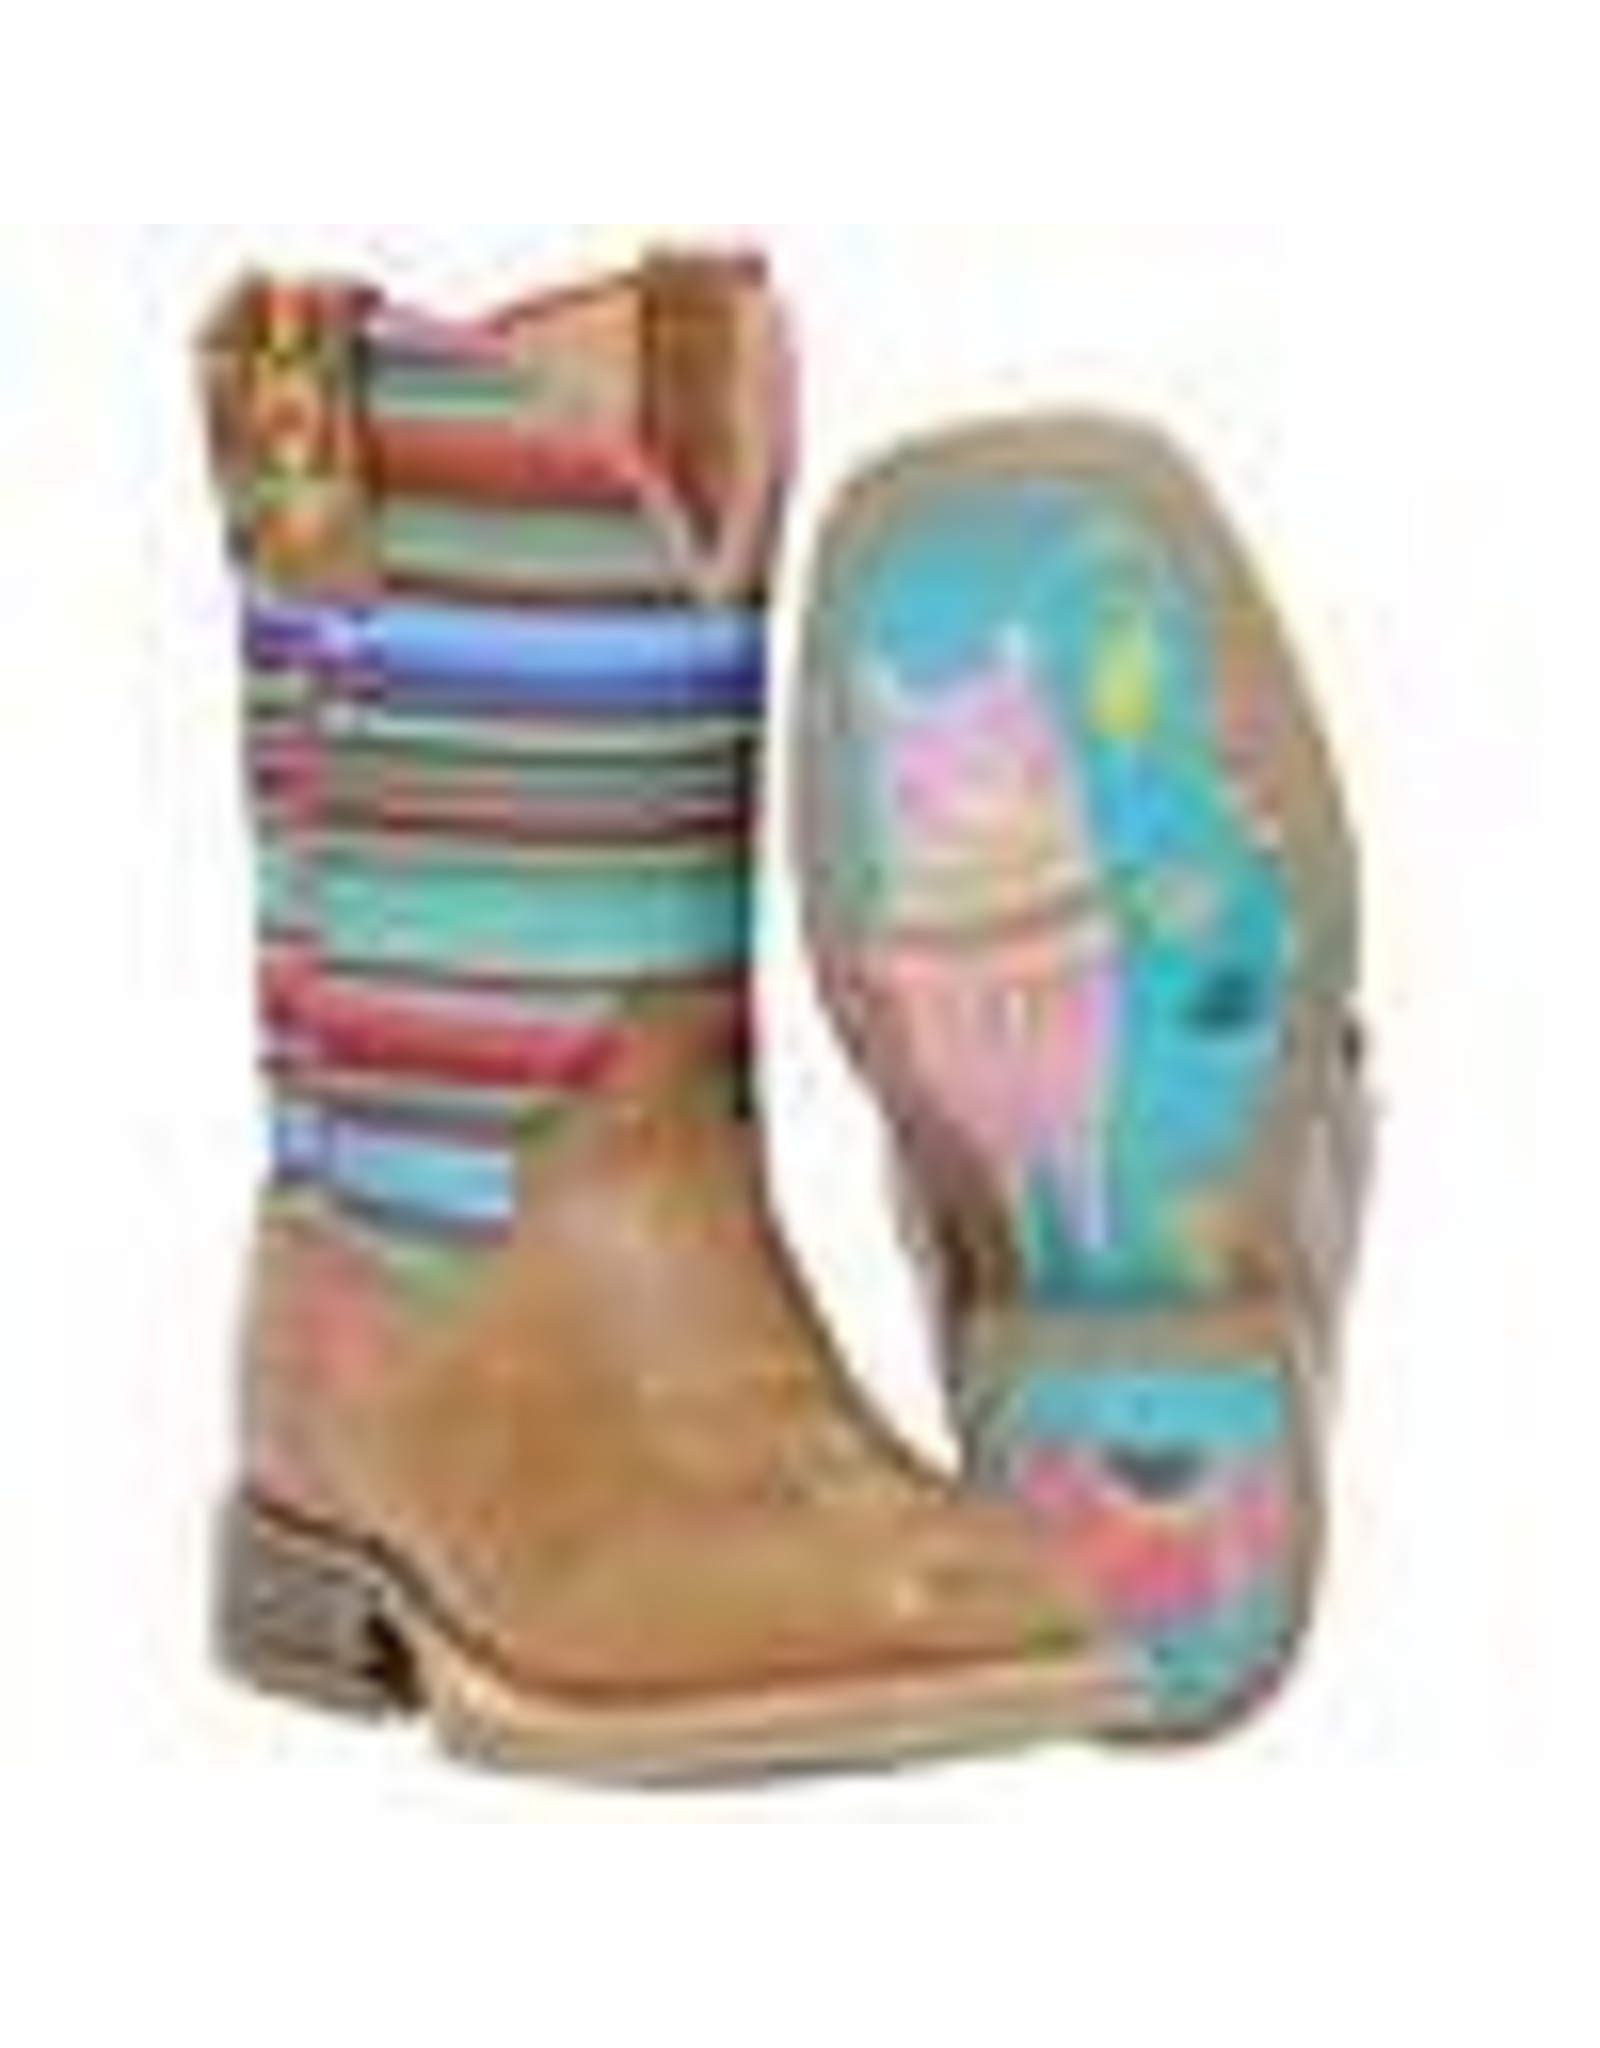 Boots-Children TINHAUL SERAPE LLAMA QUEEN SOLE - BOOT KIDS GIRLS - 14-018-0101-5004 BR